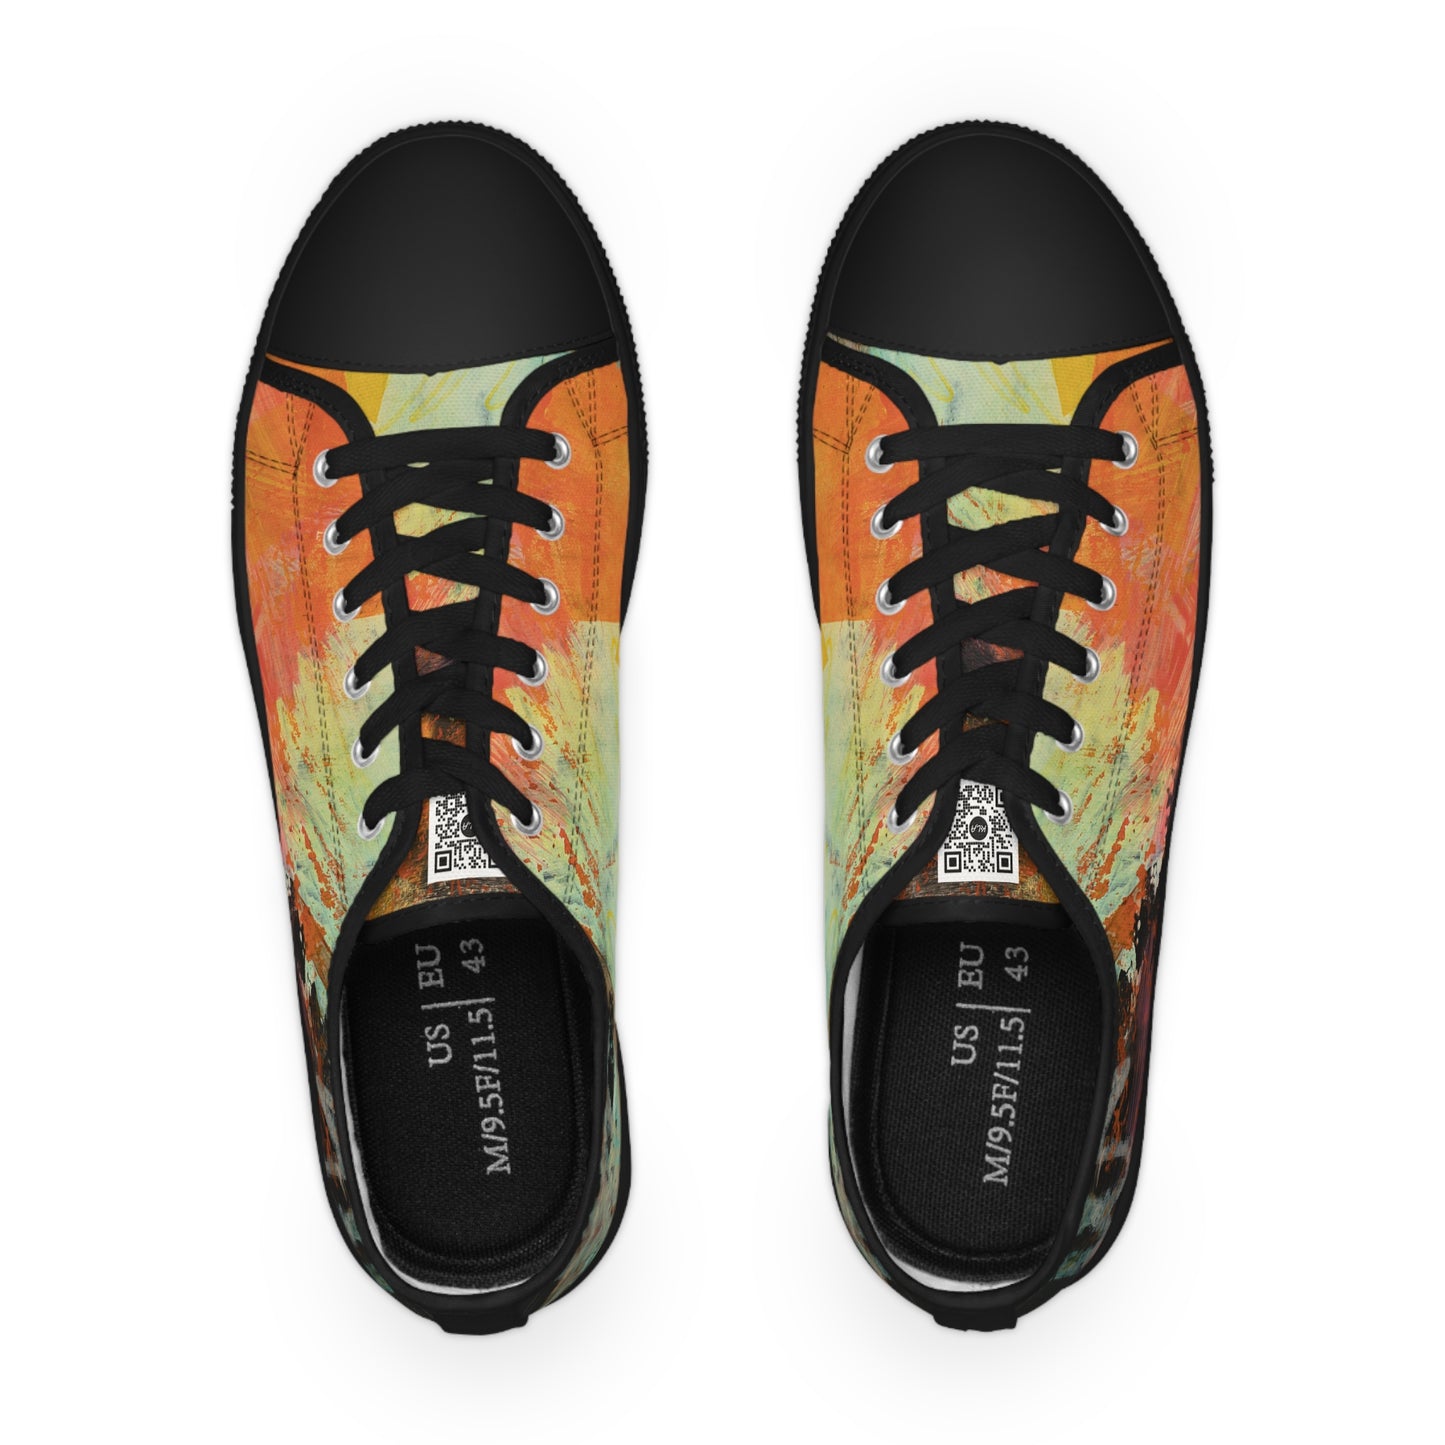 Men's Low Top Sneakers - 02870 US 14 Black sole